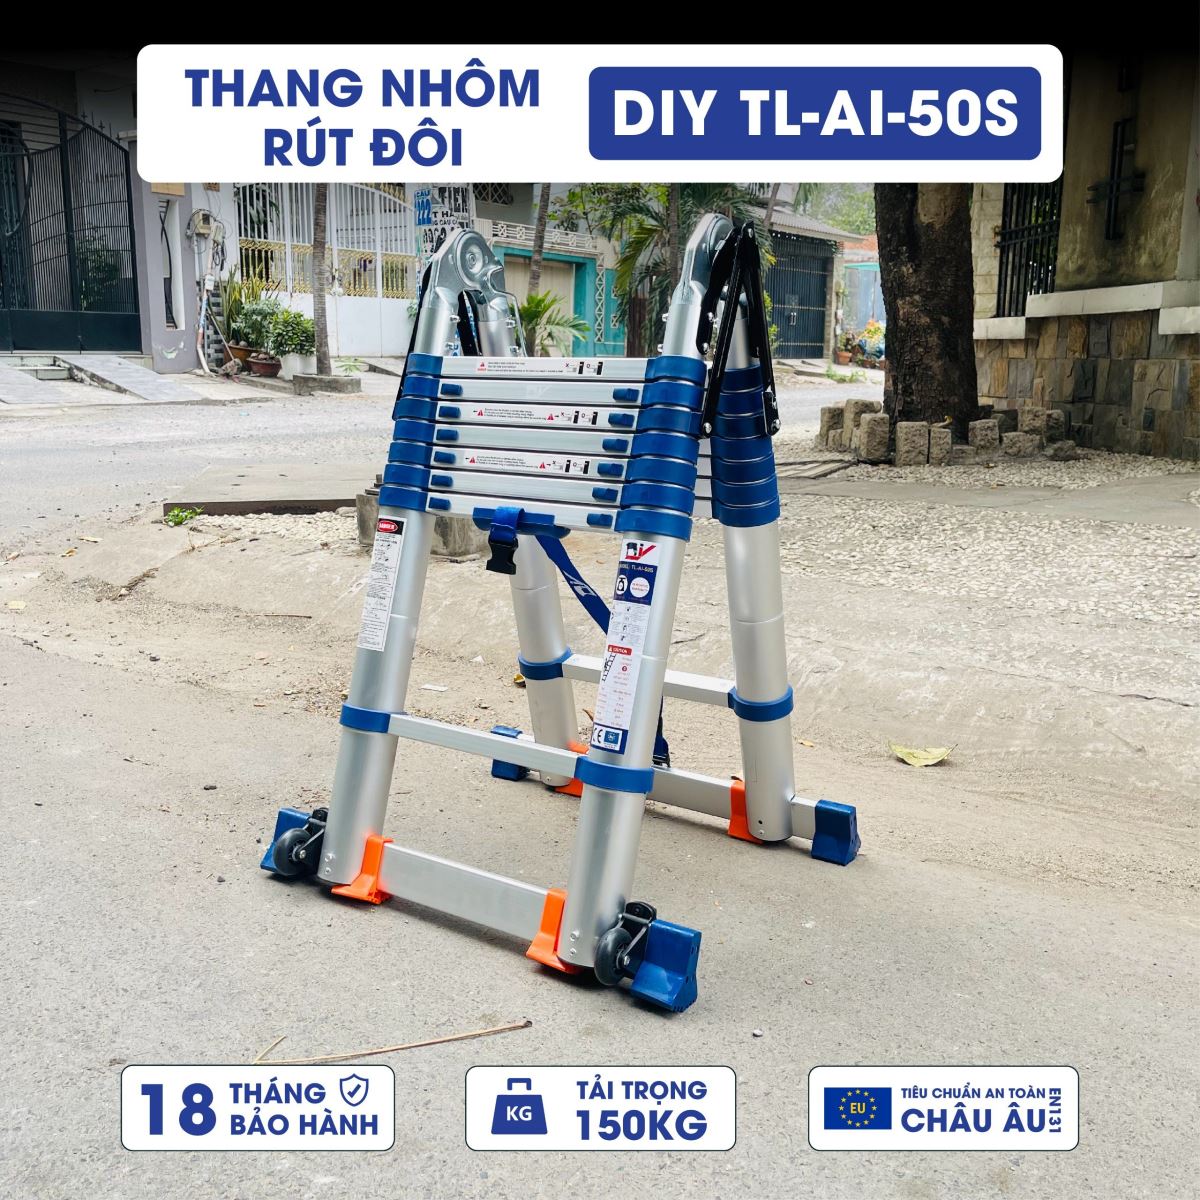 Thang nhôm rút đôi DIY TL-AI-50S